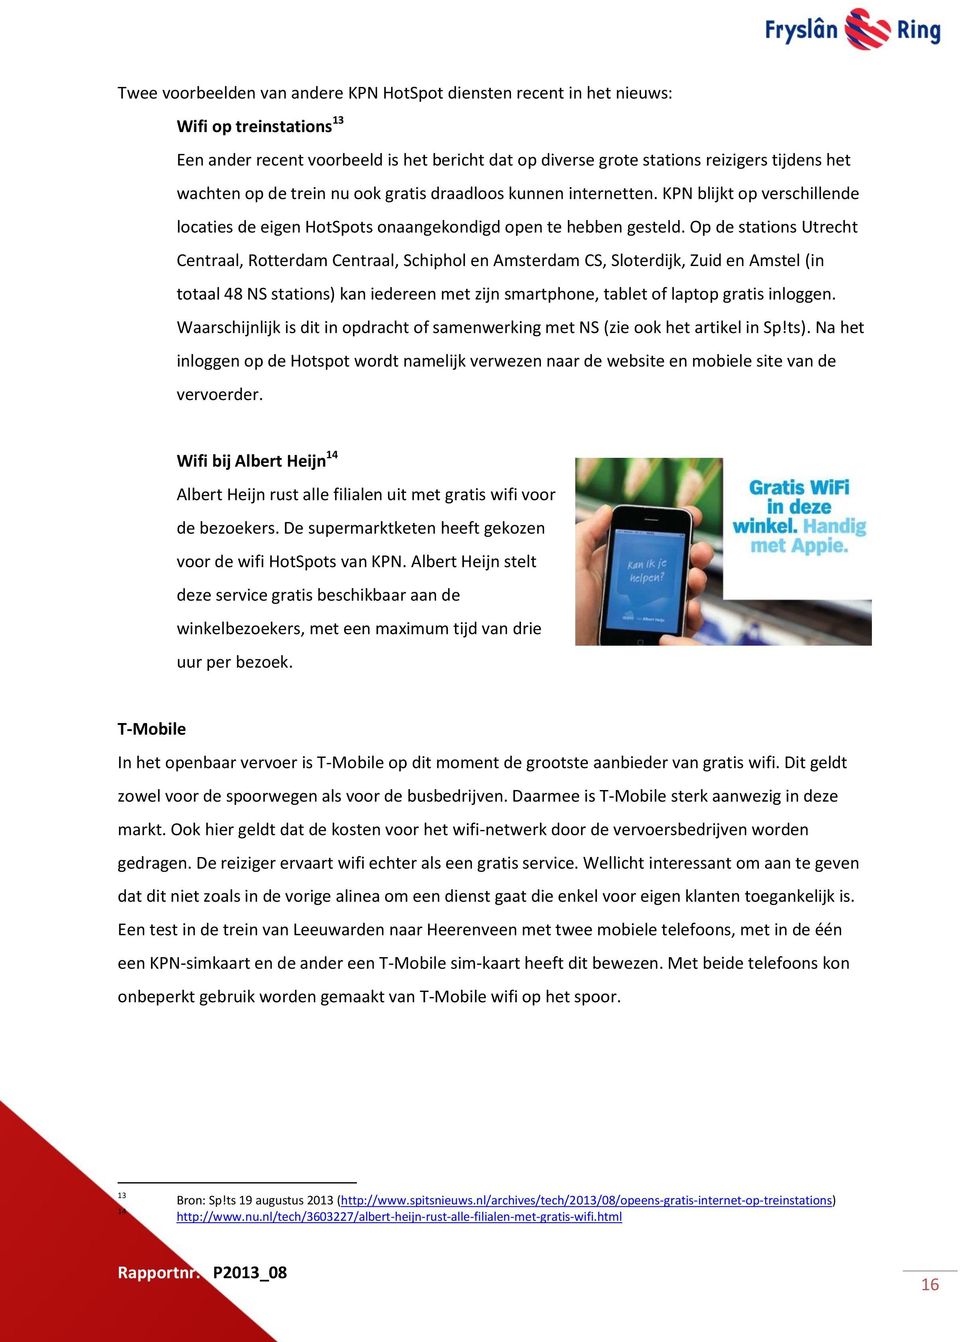 Op de stations Utrecht Centraal, Rotterdam Centraal, Schiphol en Amsterdam CS, Sloterdijk, Zuid en Amstel (in totaal 48 NS stations) kan iedereen met zijn smartphone, tablet of laptop gratis inloggen.